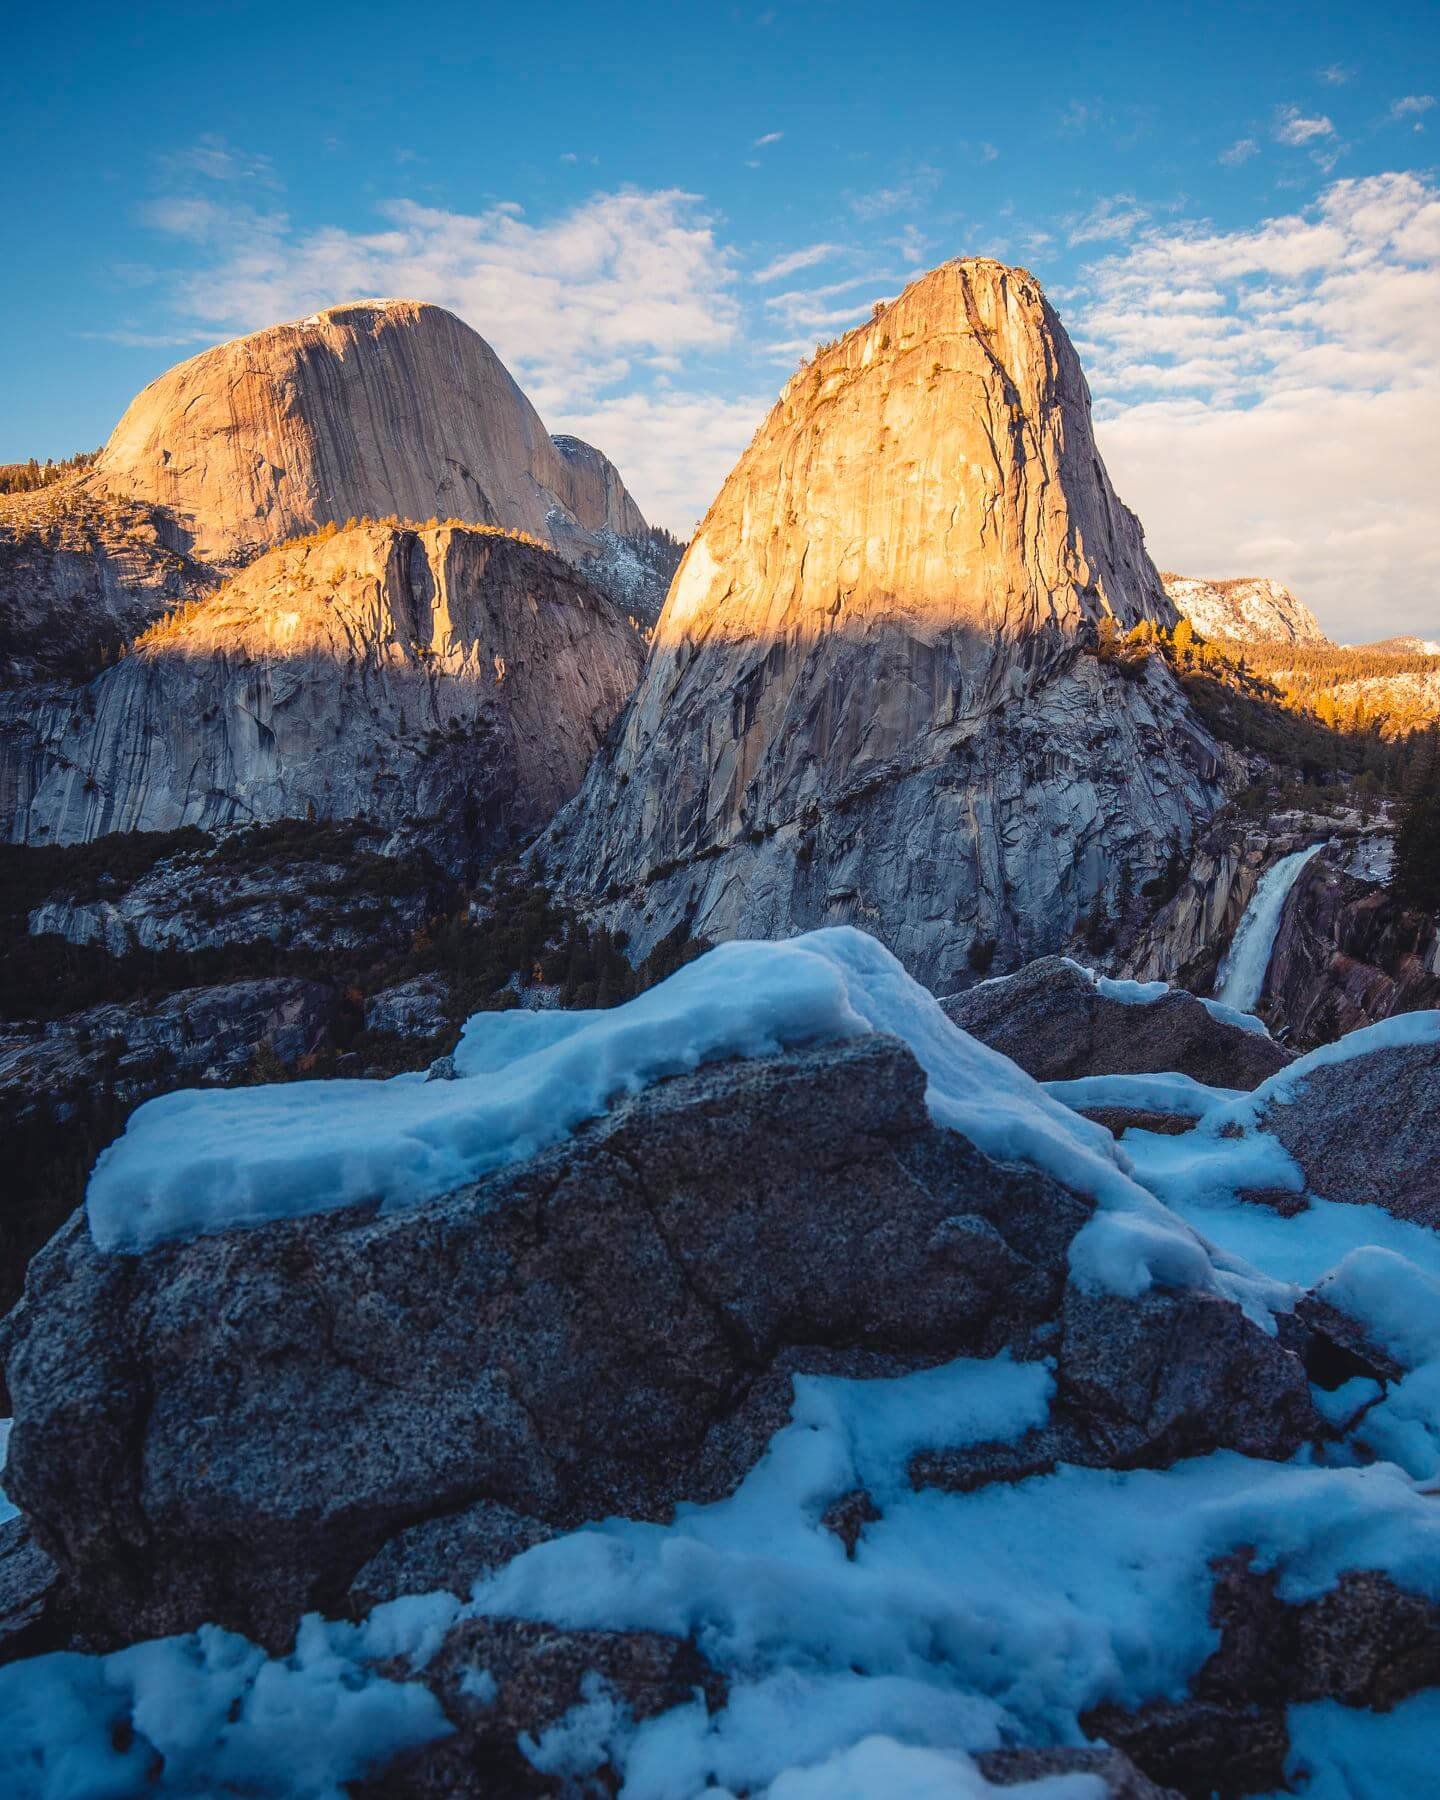 Yosemite-National-Park-Nevada-Falls-Liberty-Cap.jpg